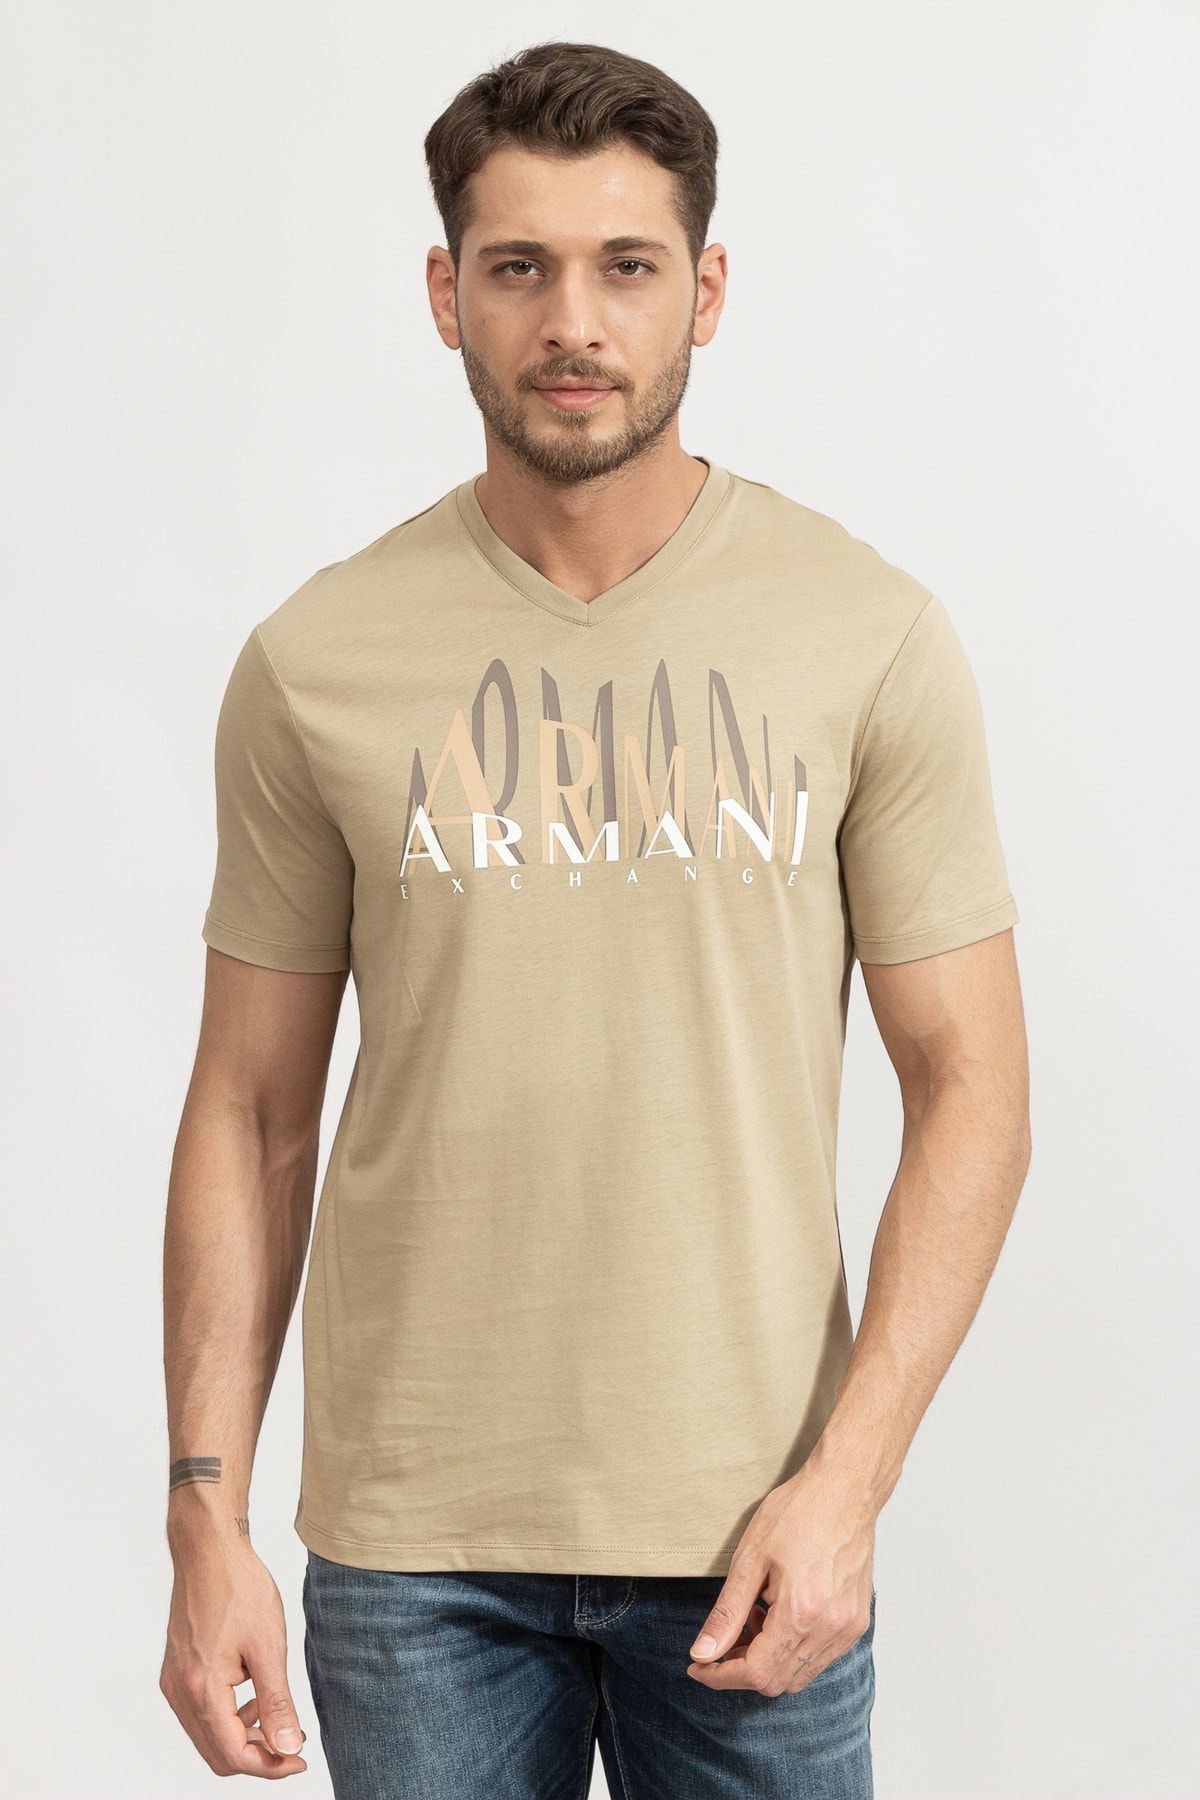 Armani Exchange Erkek V Yaka T-shirt3lztbqzj8tz